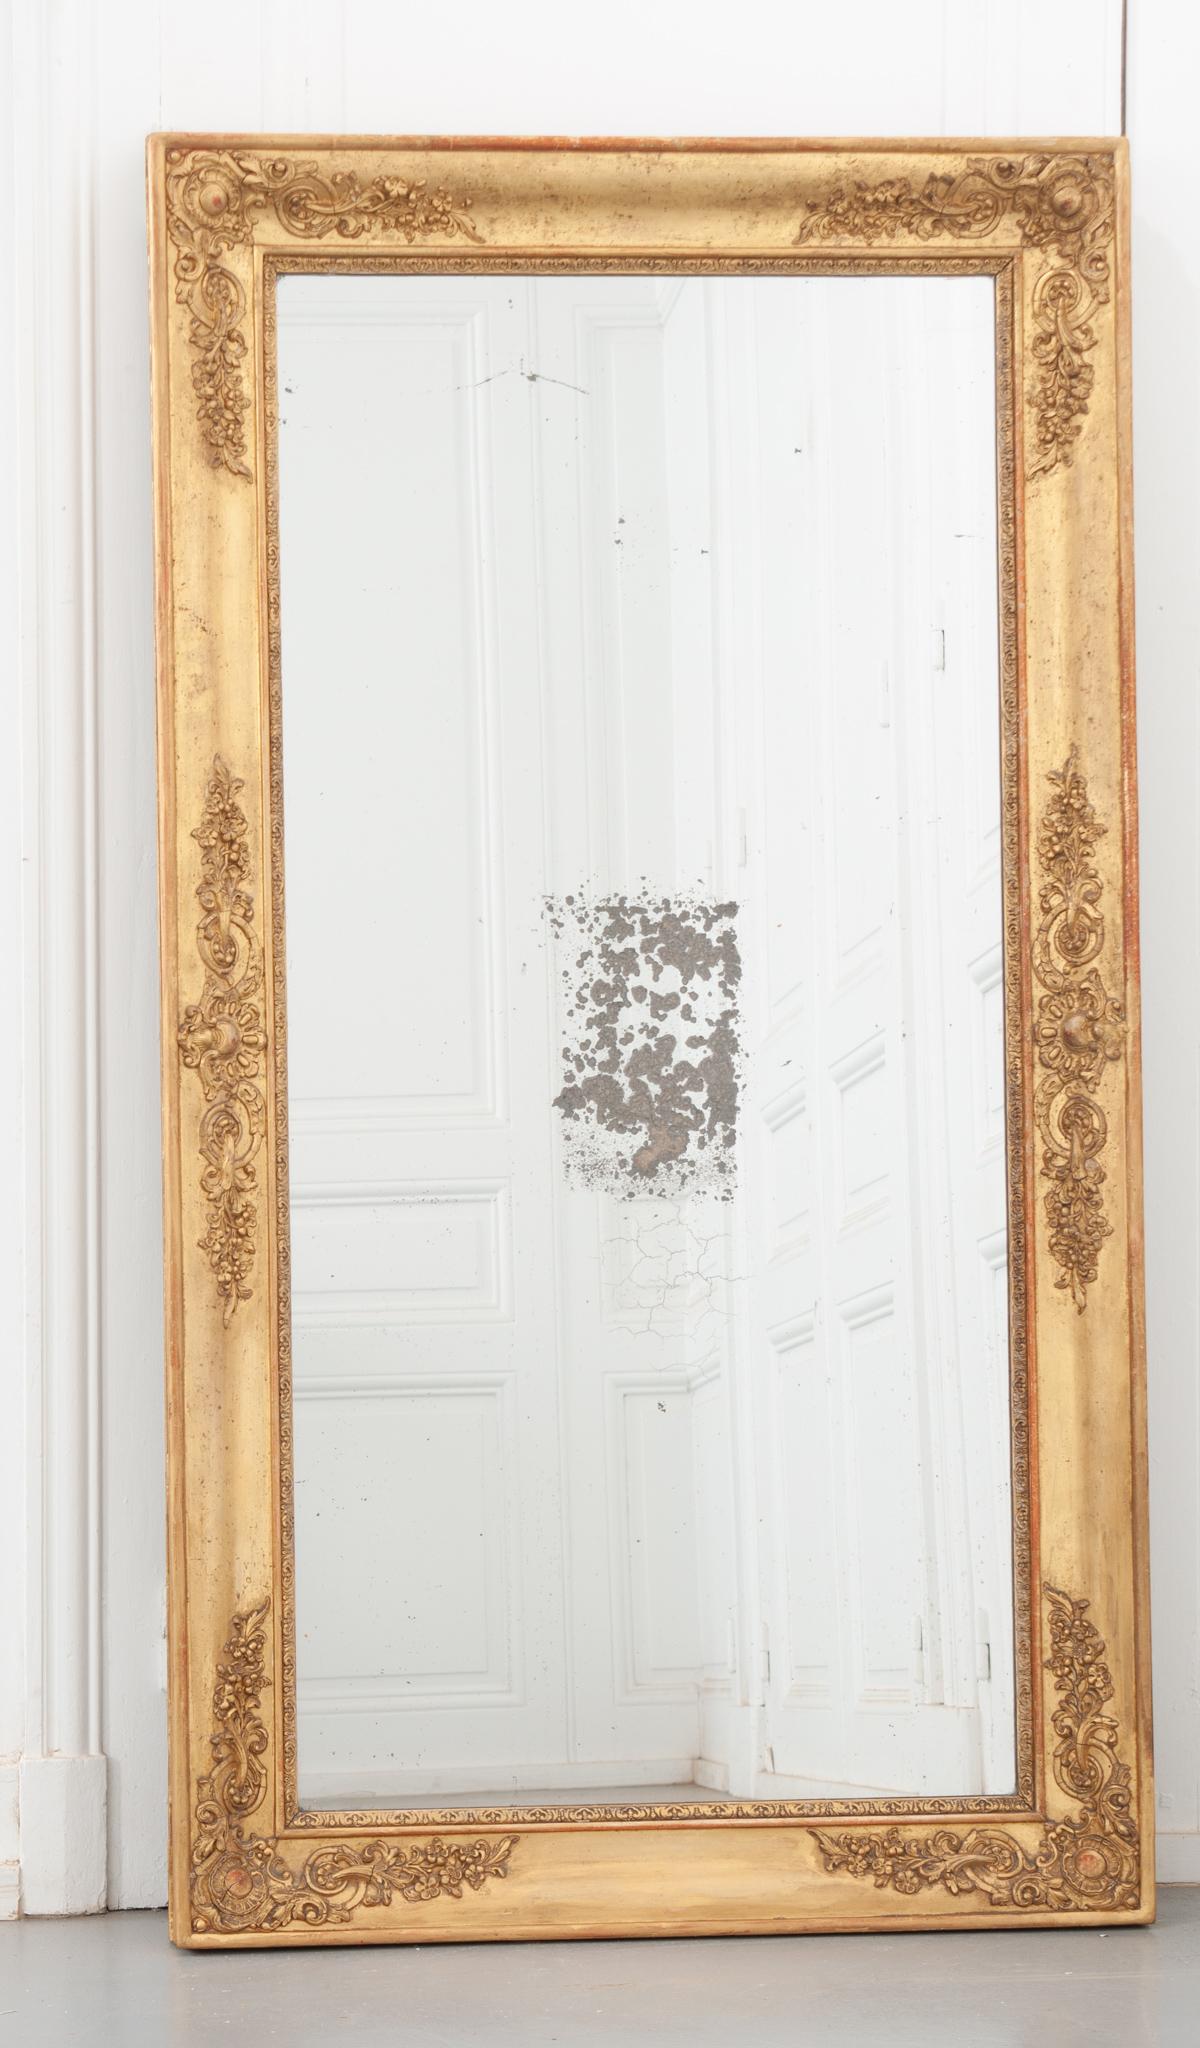 Dieser schöne Spiegel im Empire-Stil strotzt nur so vor außergewöhnlichen Details. Der vergoldete Rahmen hat eine fantastische Patina, mit Flecken von französischem Rot, die durchscheinen. Detaillierte Motive, die ein Wappen und üppig blühende